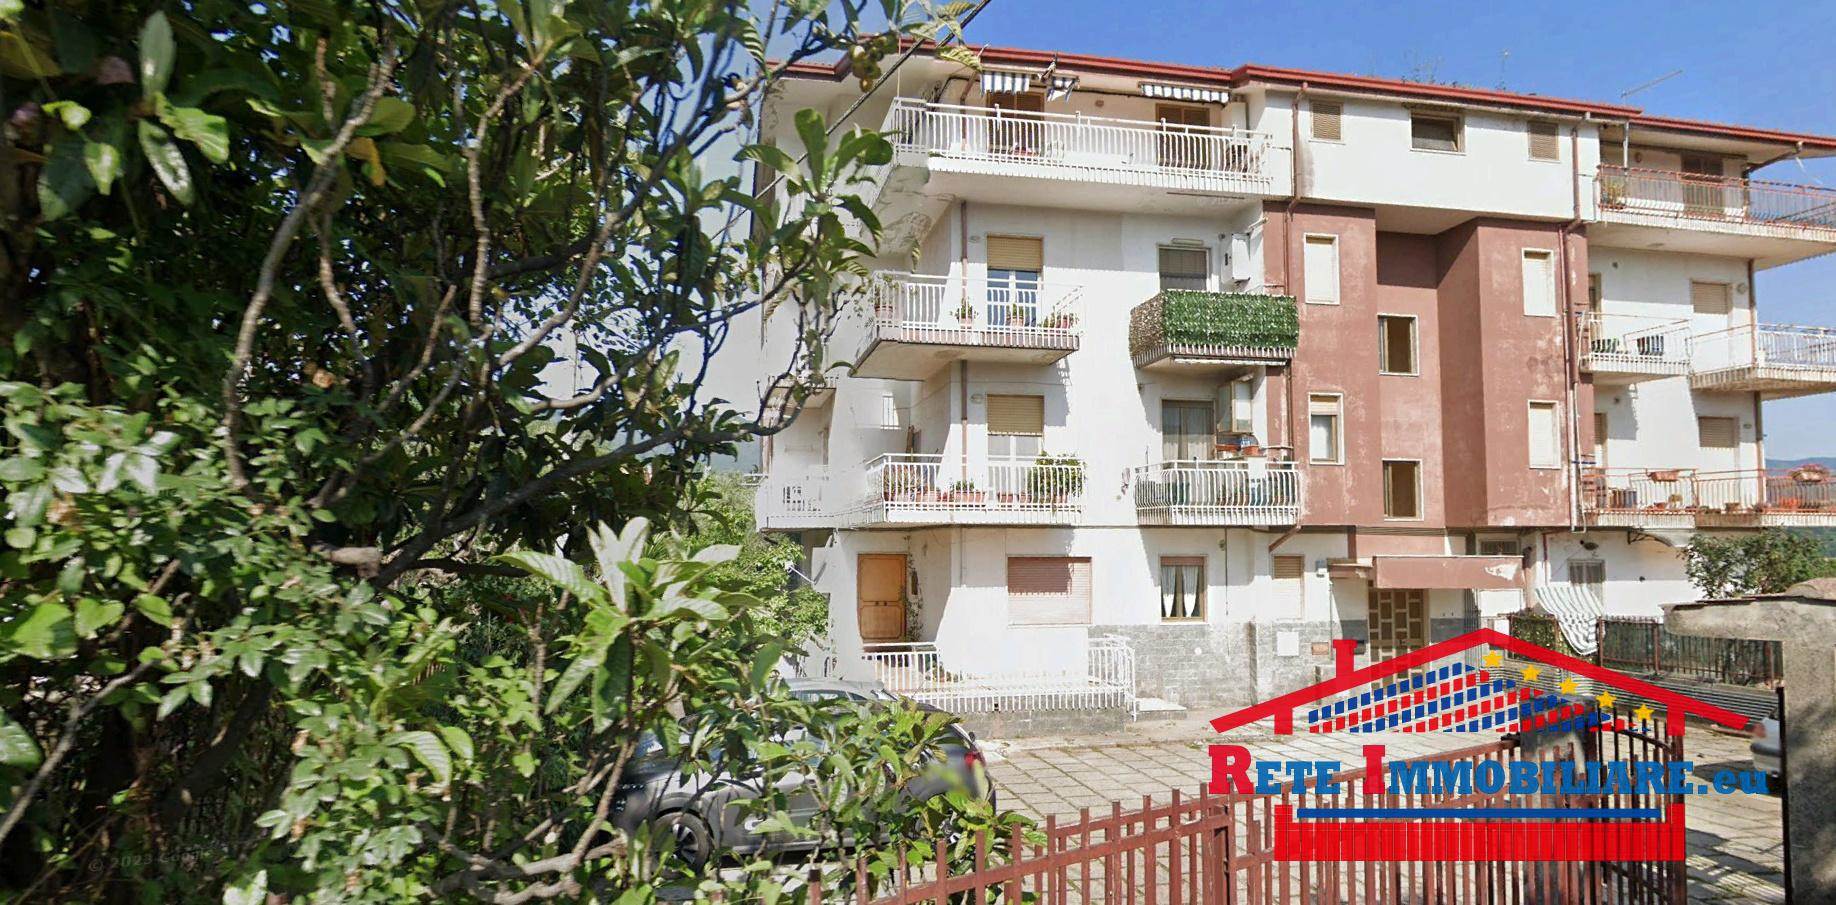 Appartamento in vendita a Mendicino, 4 locali, zona Località: PASQUALI, prezzo € 58.000 | PortaleAgenzieImmobiliari.it